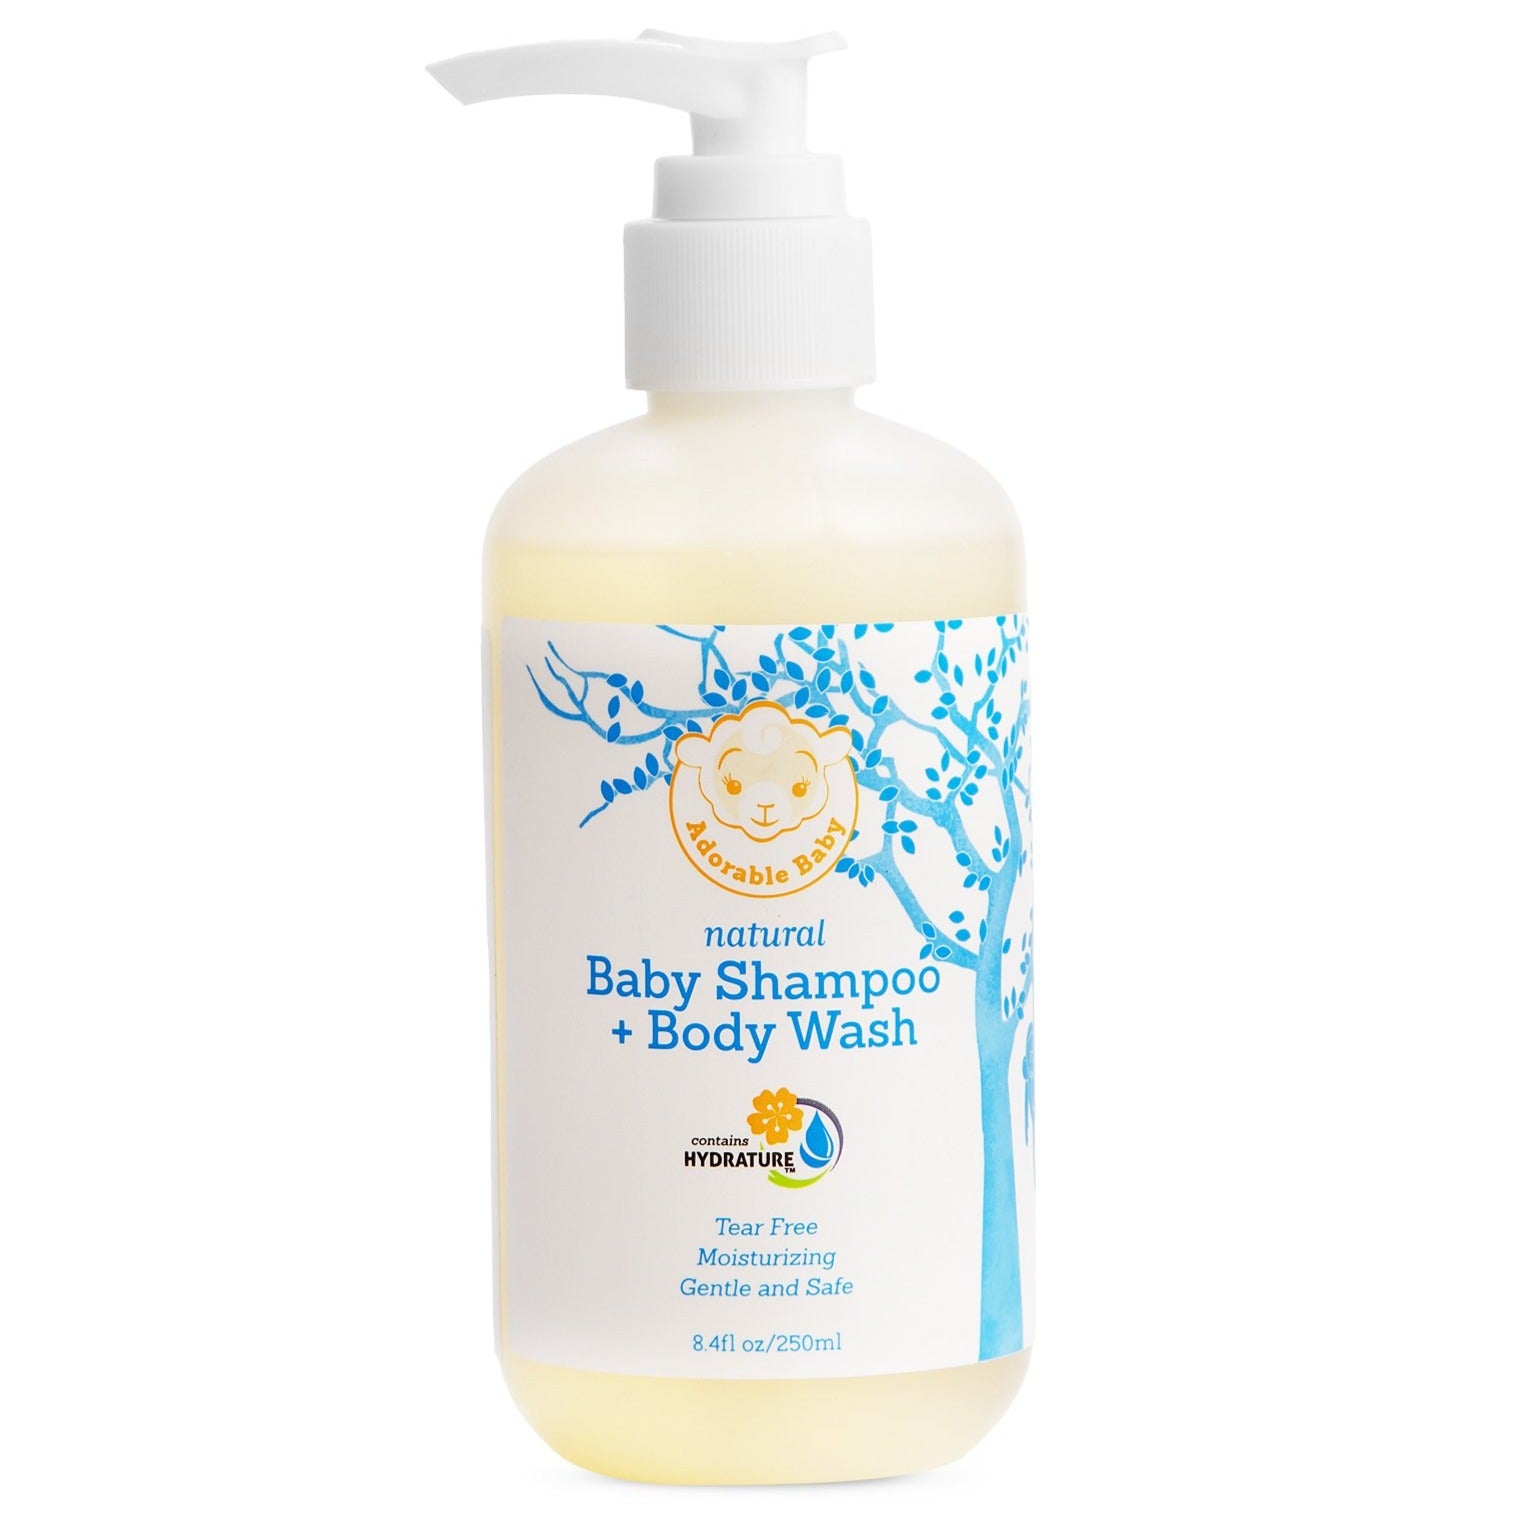 Natural Baby Shampoo and Body Wash